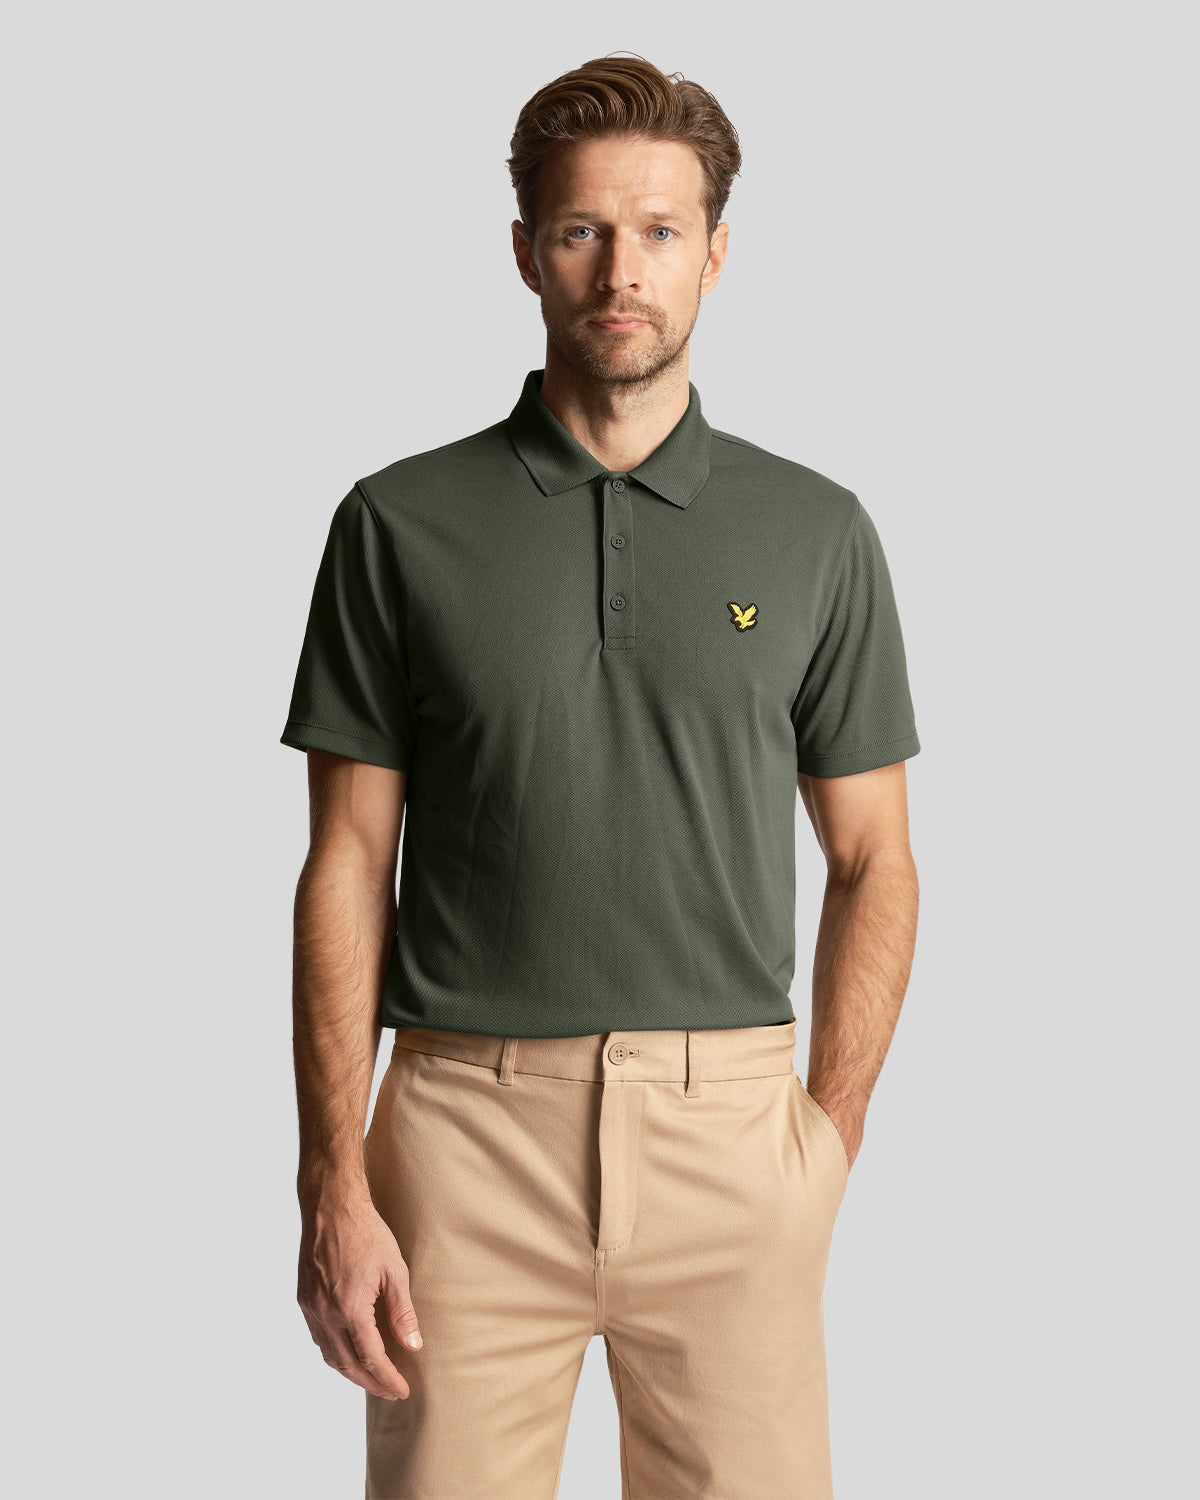 Lyle & Scott Mens Green Golf Technical Polo Shirt - XXL